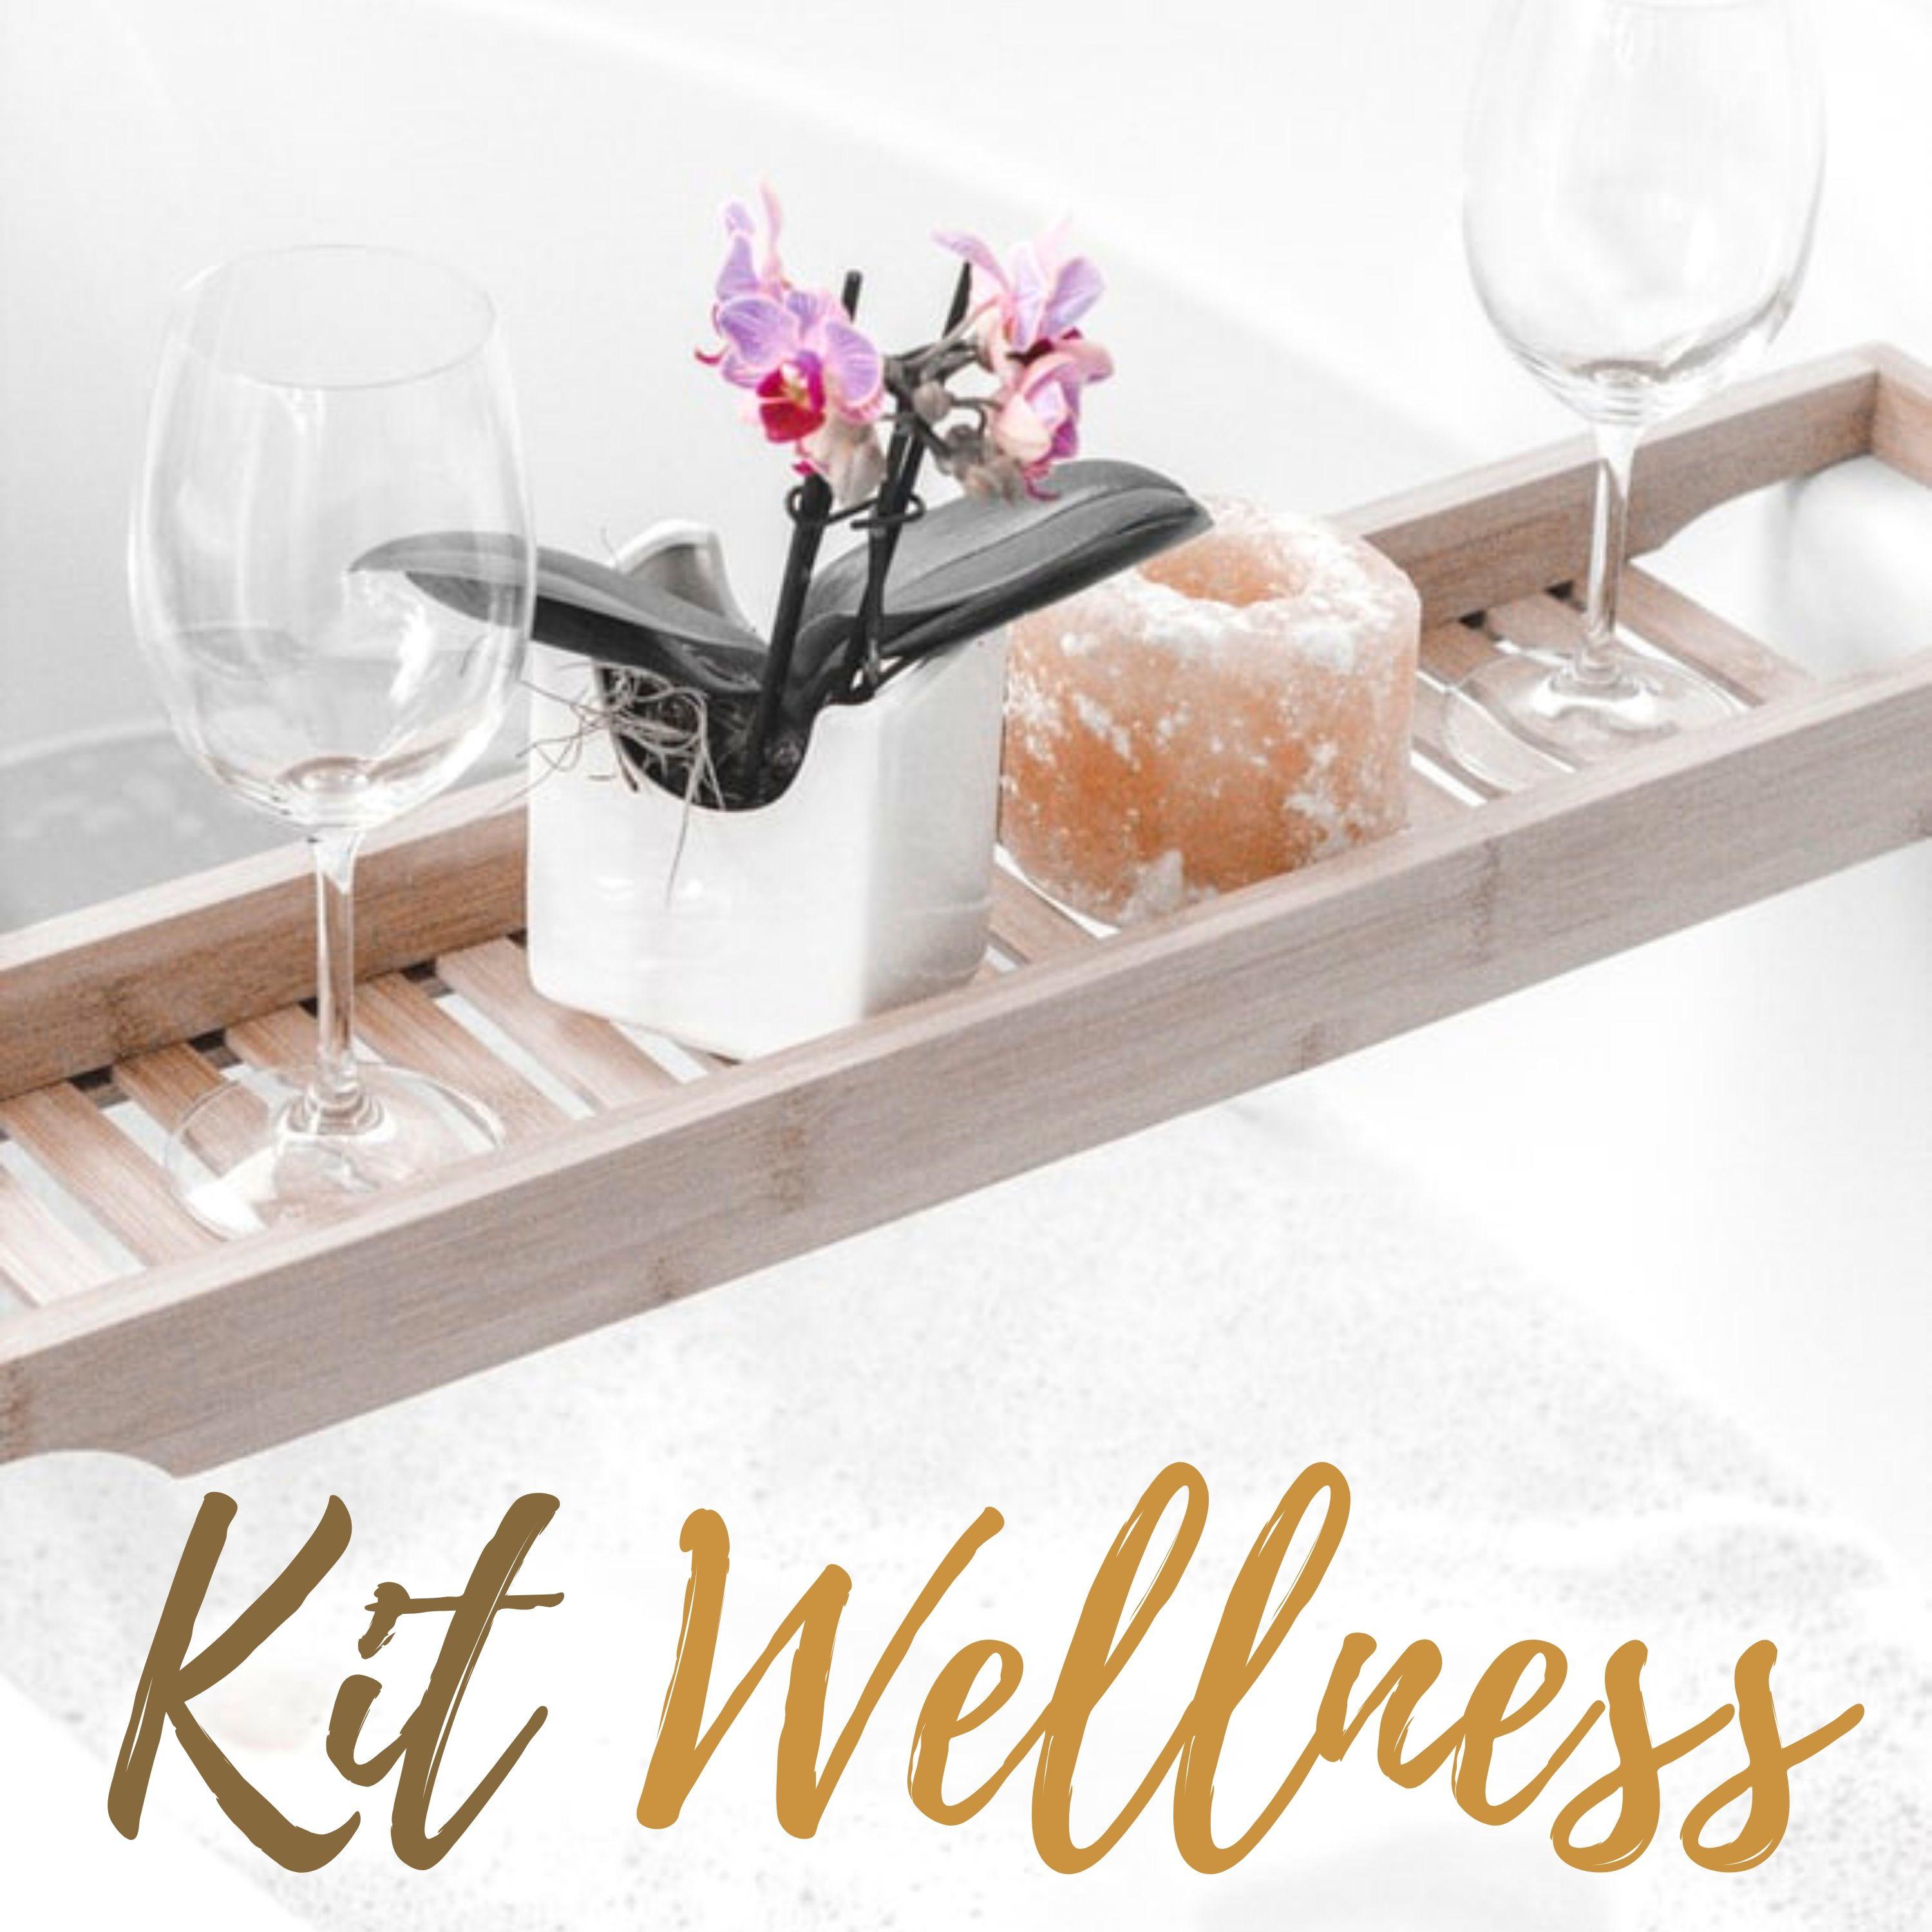 Kit Wellness: 2 ore di musica rilassante per spa, centri benessere, terme